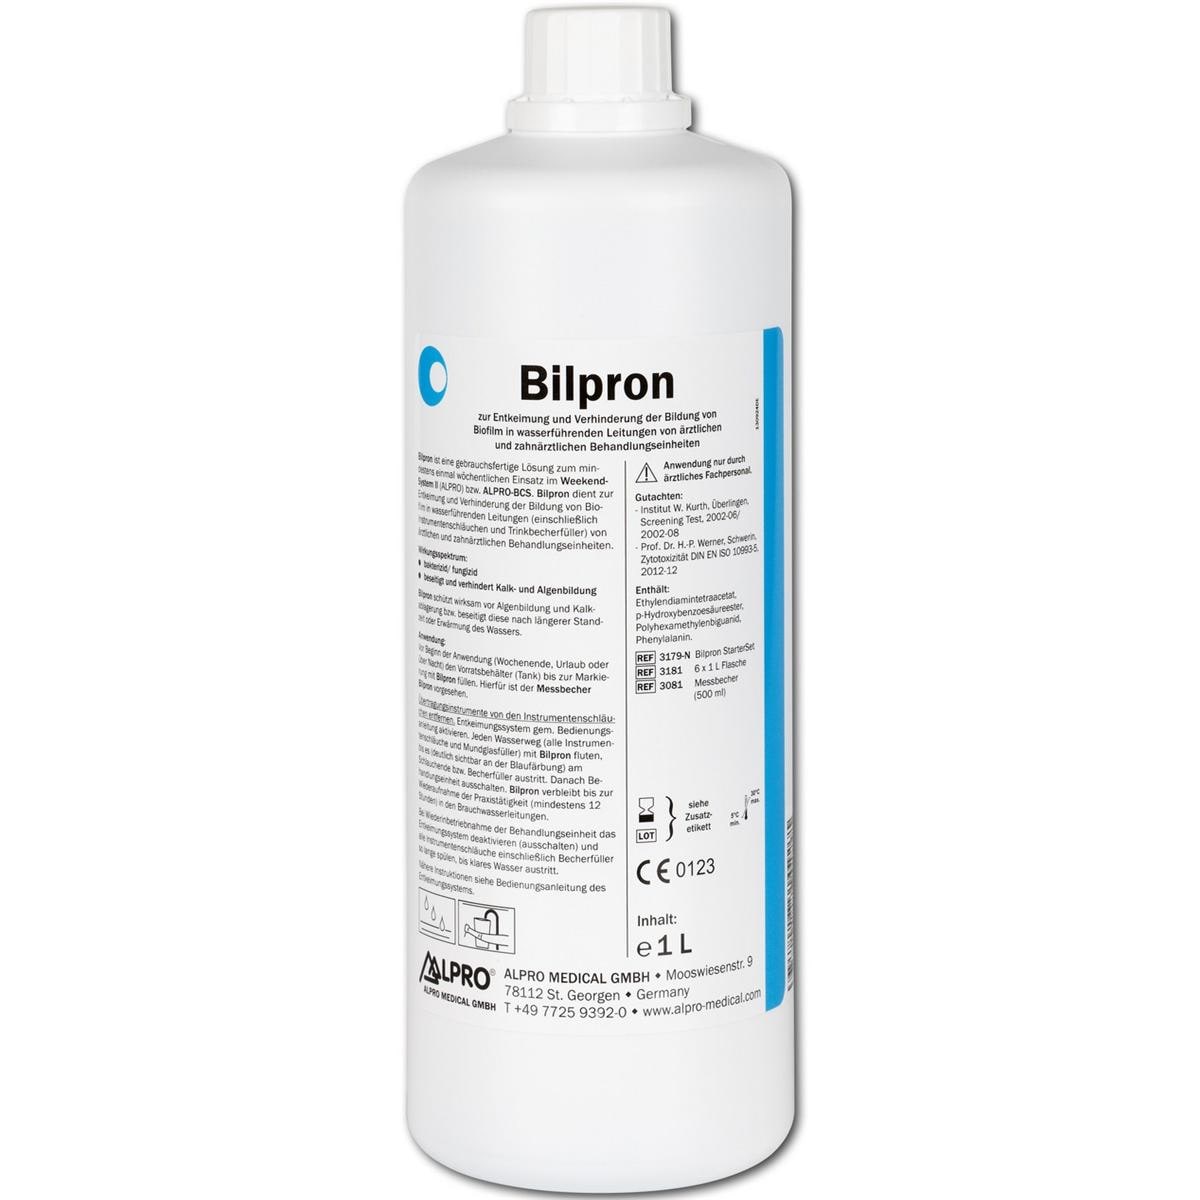 Bilpron - Nachfüllpackung - Flaschen 6 x 1 Liter